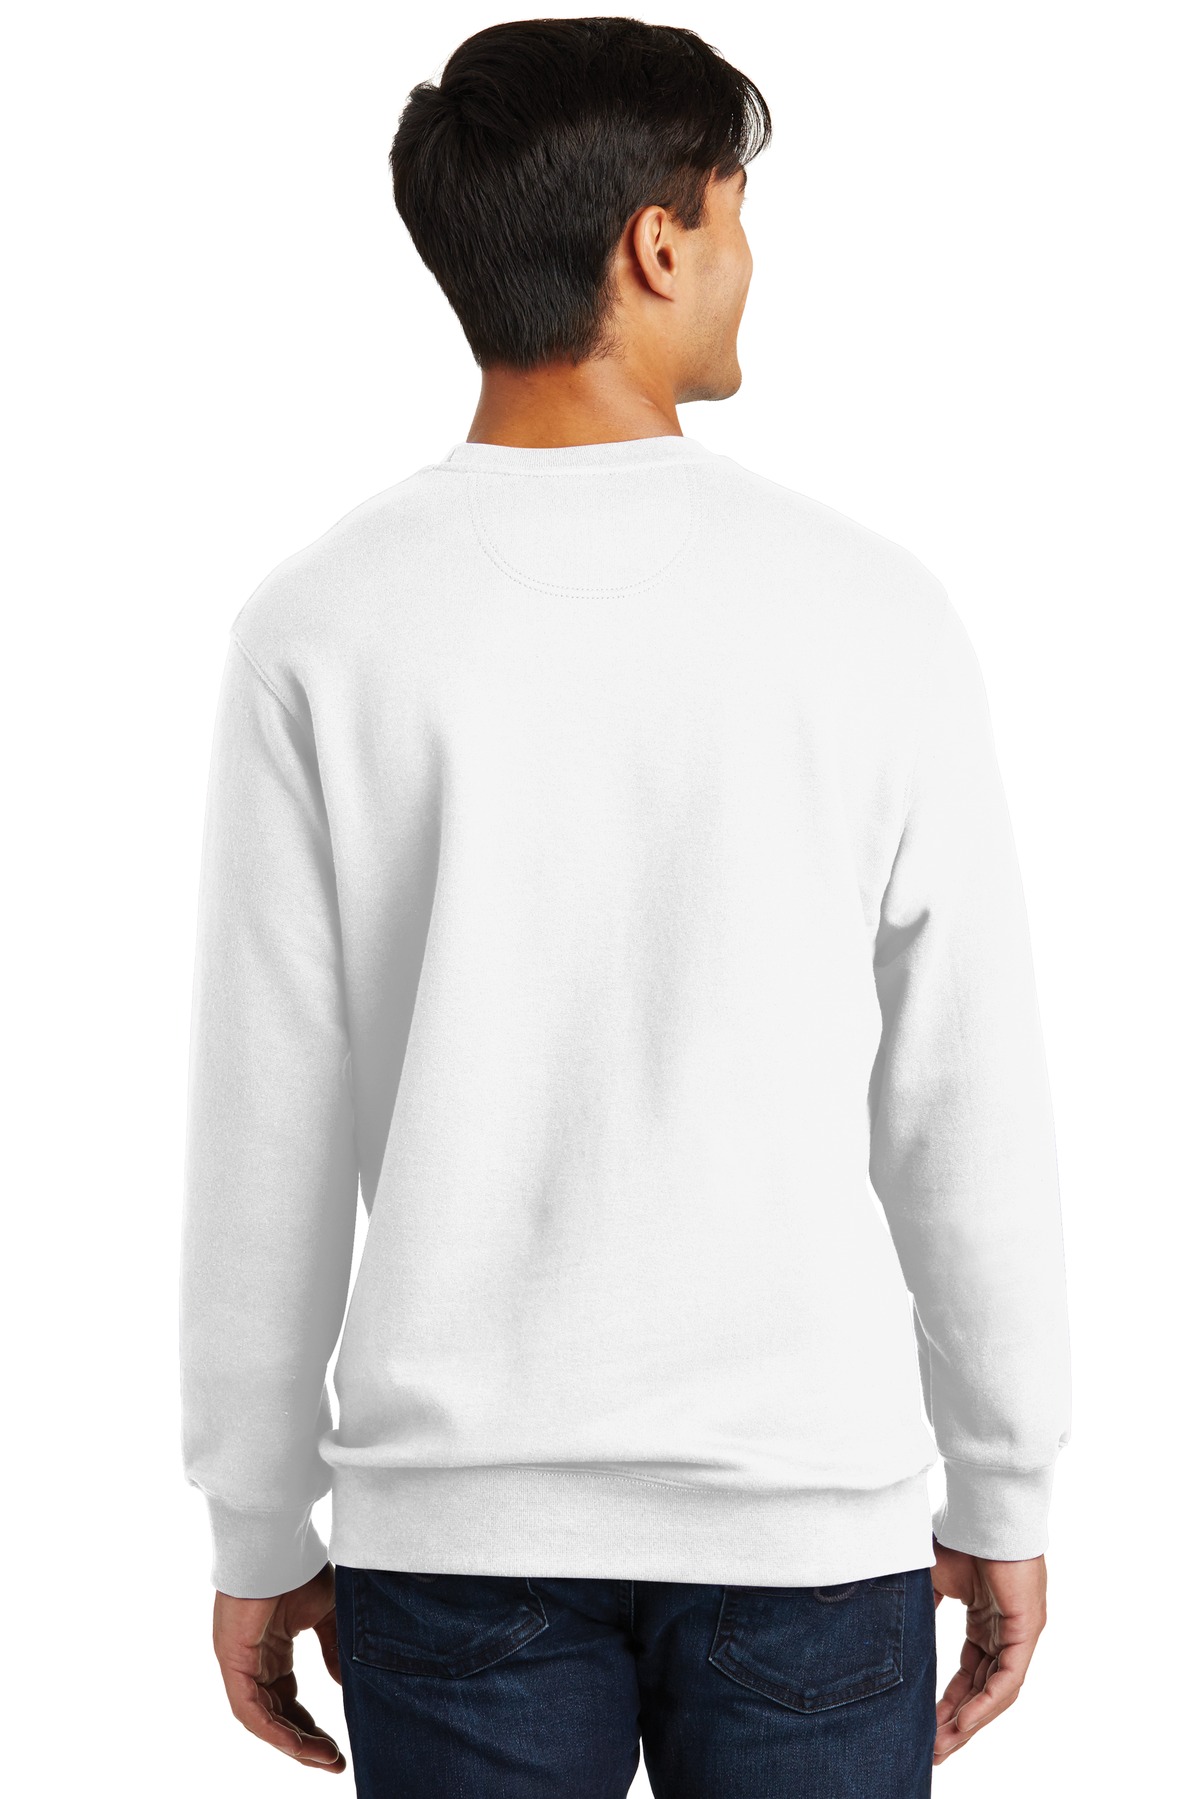 Port & Company ® Fan Favorite Fleece Crewneck Sweatshirt. PC850 ...